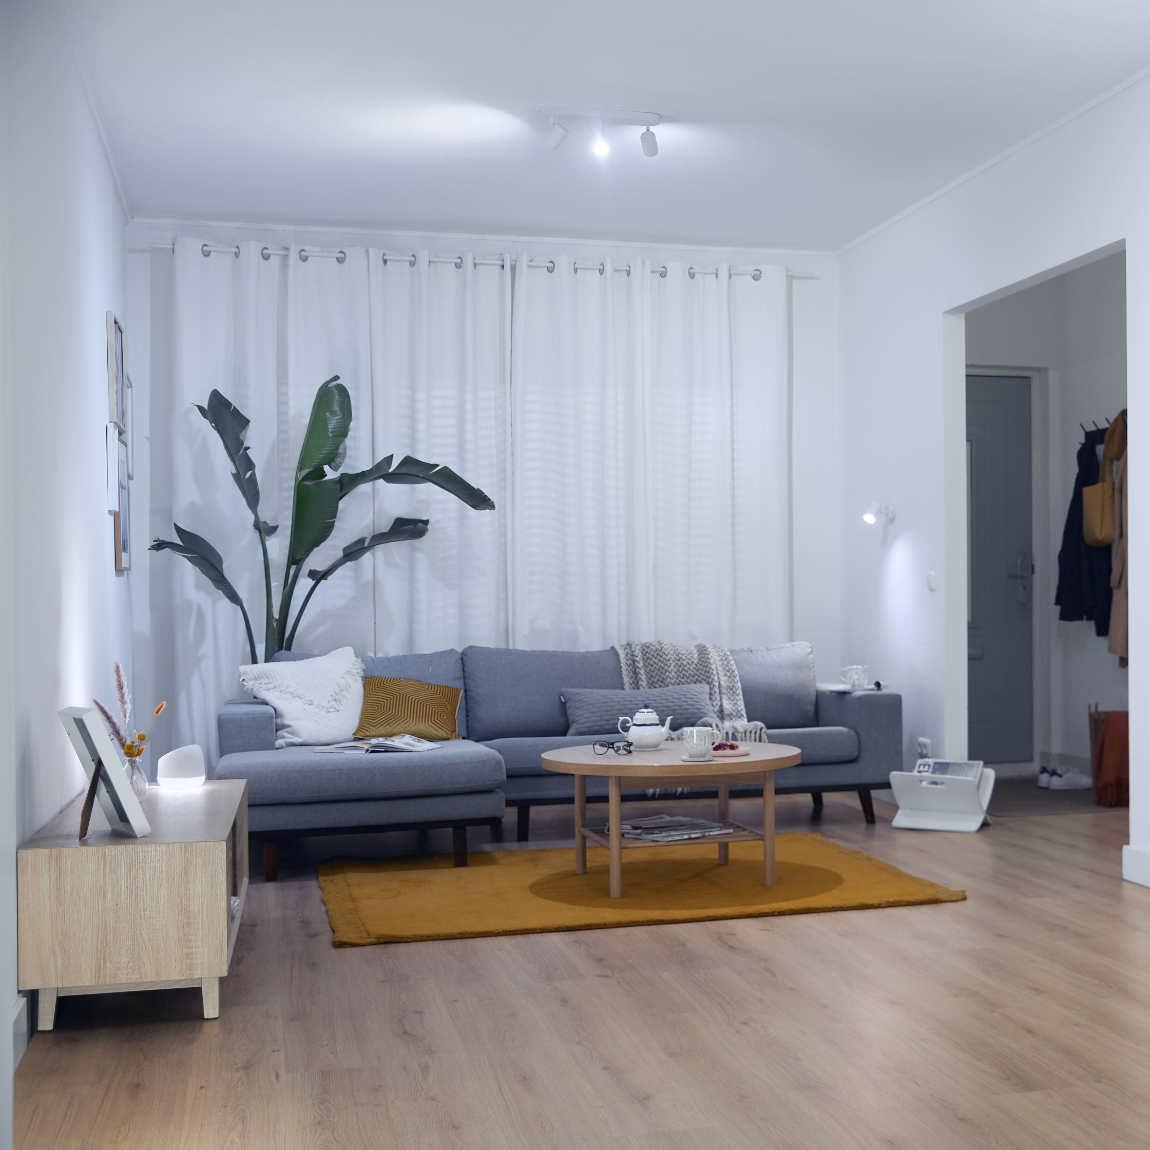 WiZ IMAGEO Spots Deckenleuchte Tunable Farbig 3x 5W - weiß_Lifestyle_Wohnzimmer kaltweiß